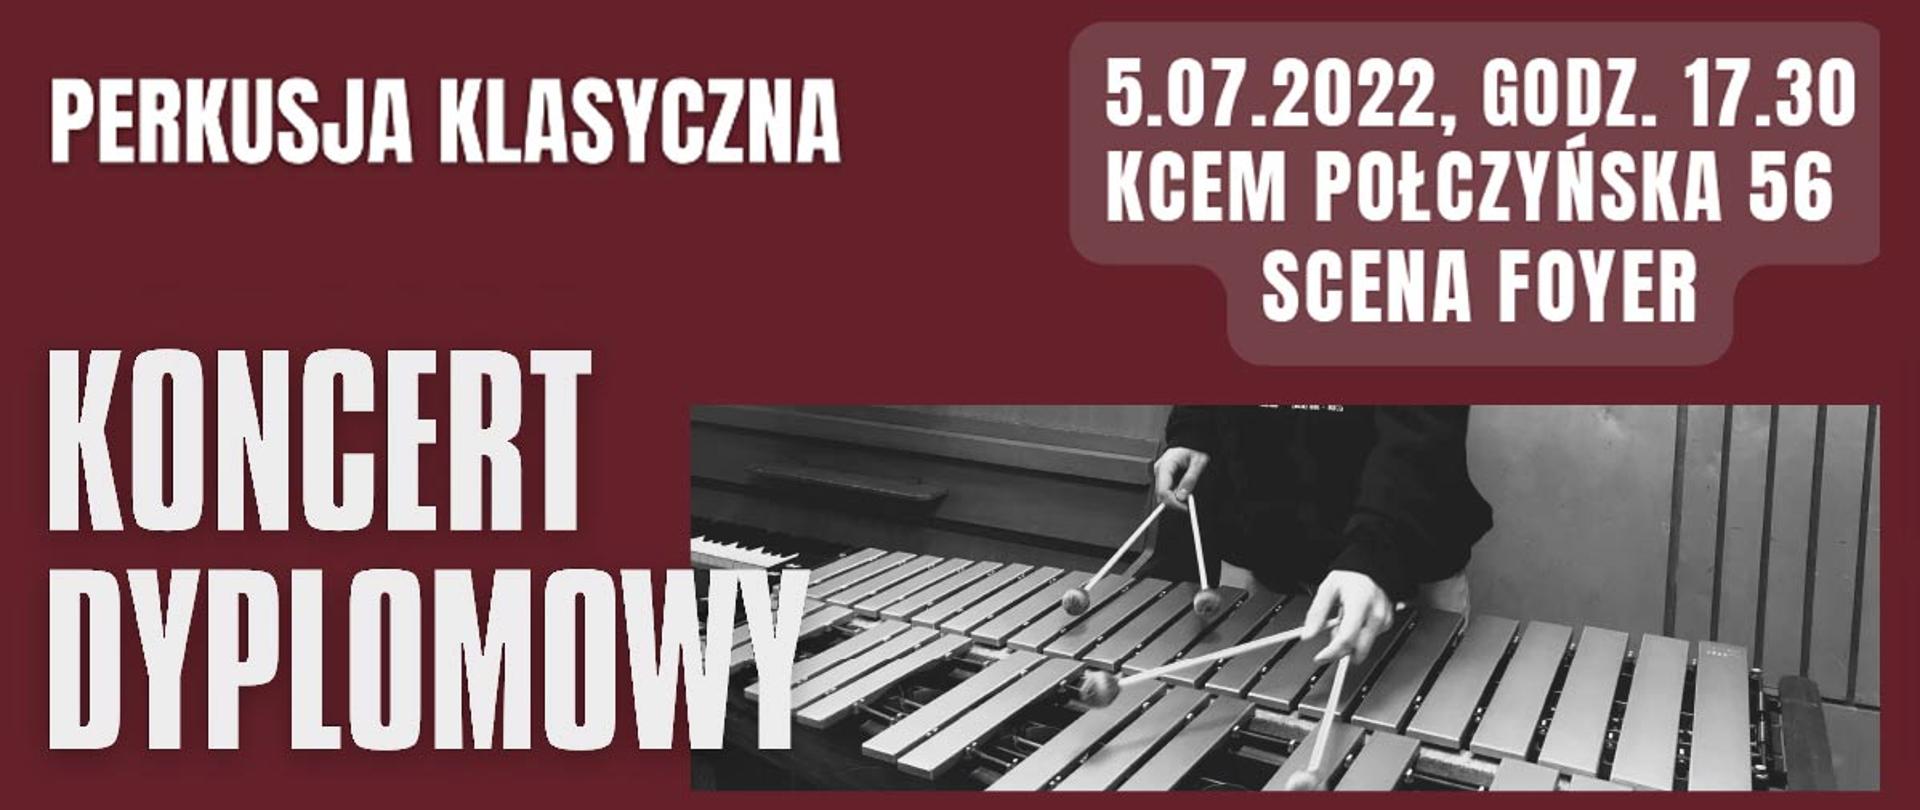 Grafika z napisem KONCERT DYPLOMOWY - Perkusja klasyczna, 5 lipca 2022, godz 17.30, Scena Foyer, ul. Połczyńska 56